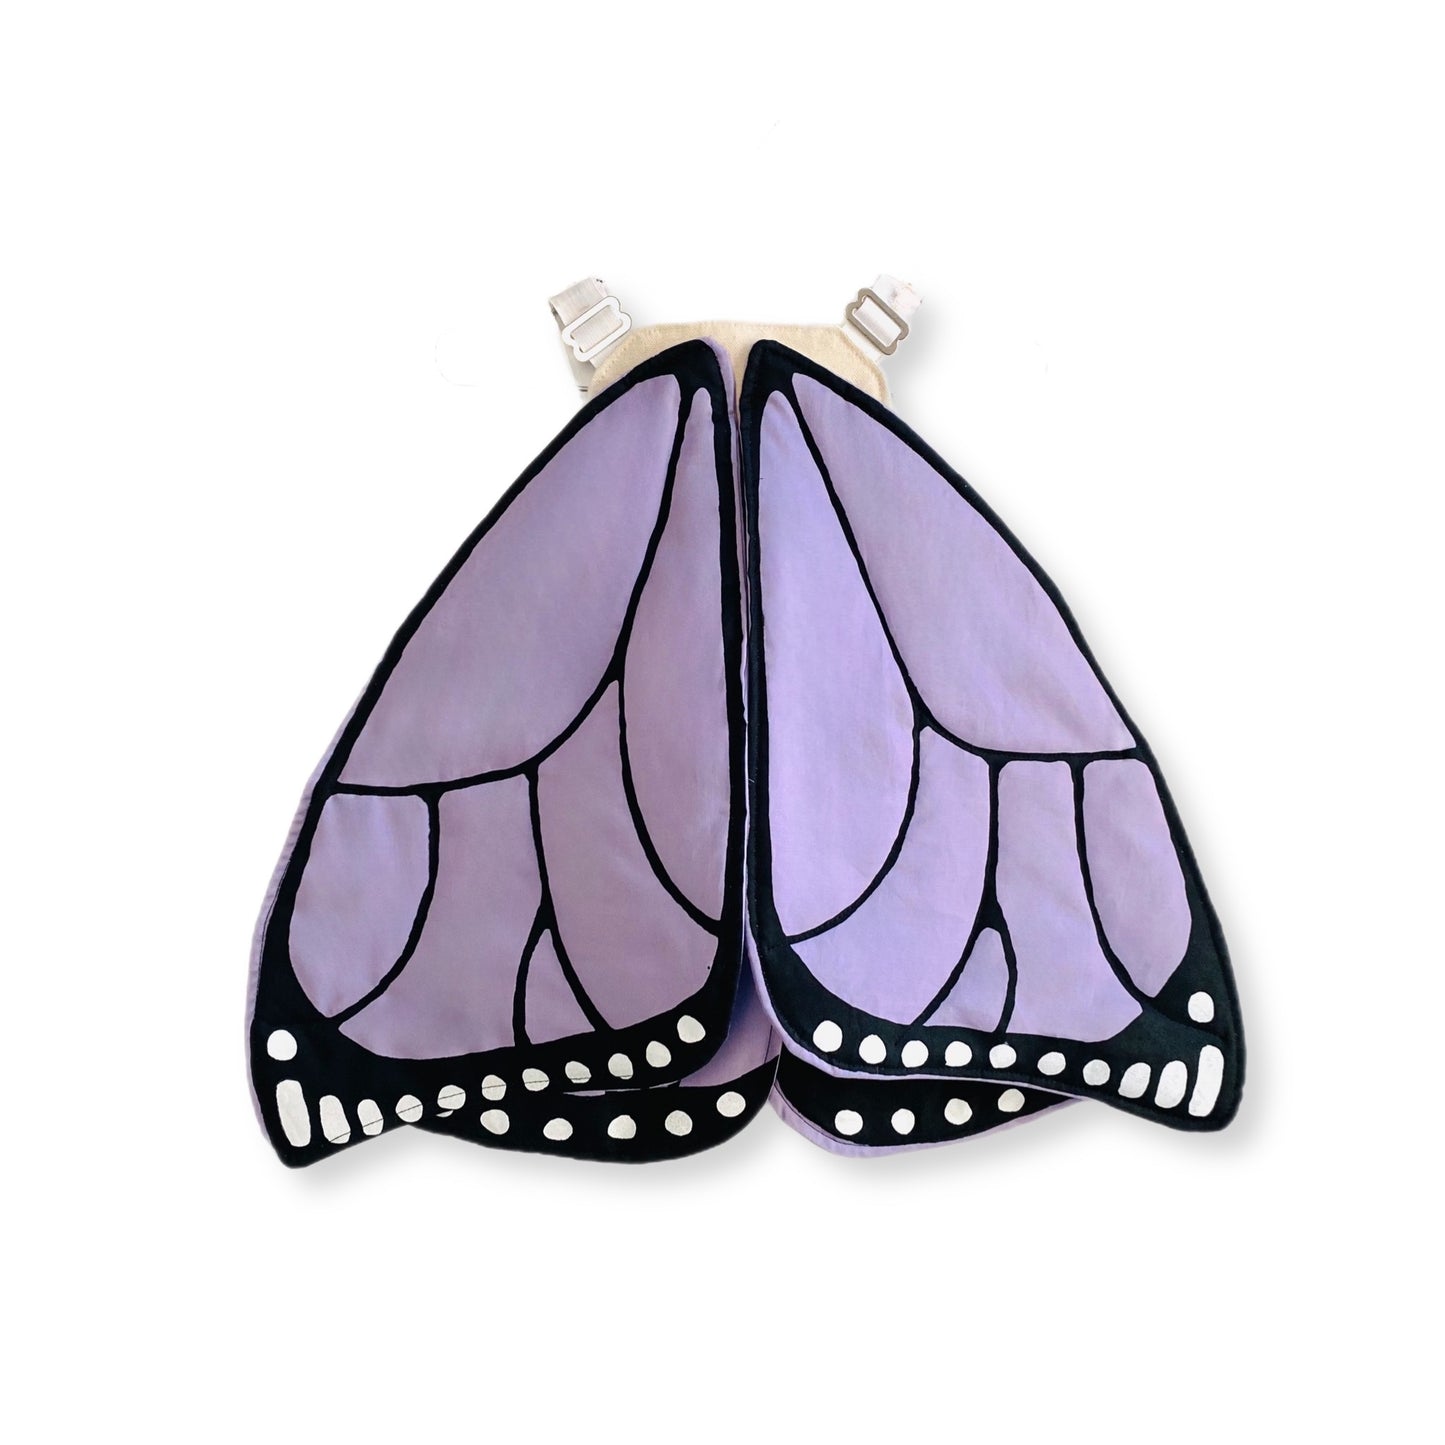 Kids purple butterfly wings from Jack Be Nimble.